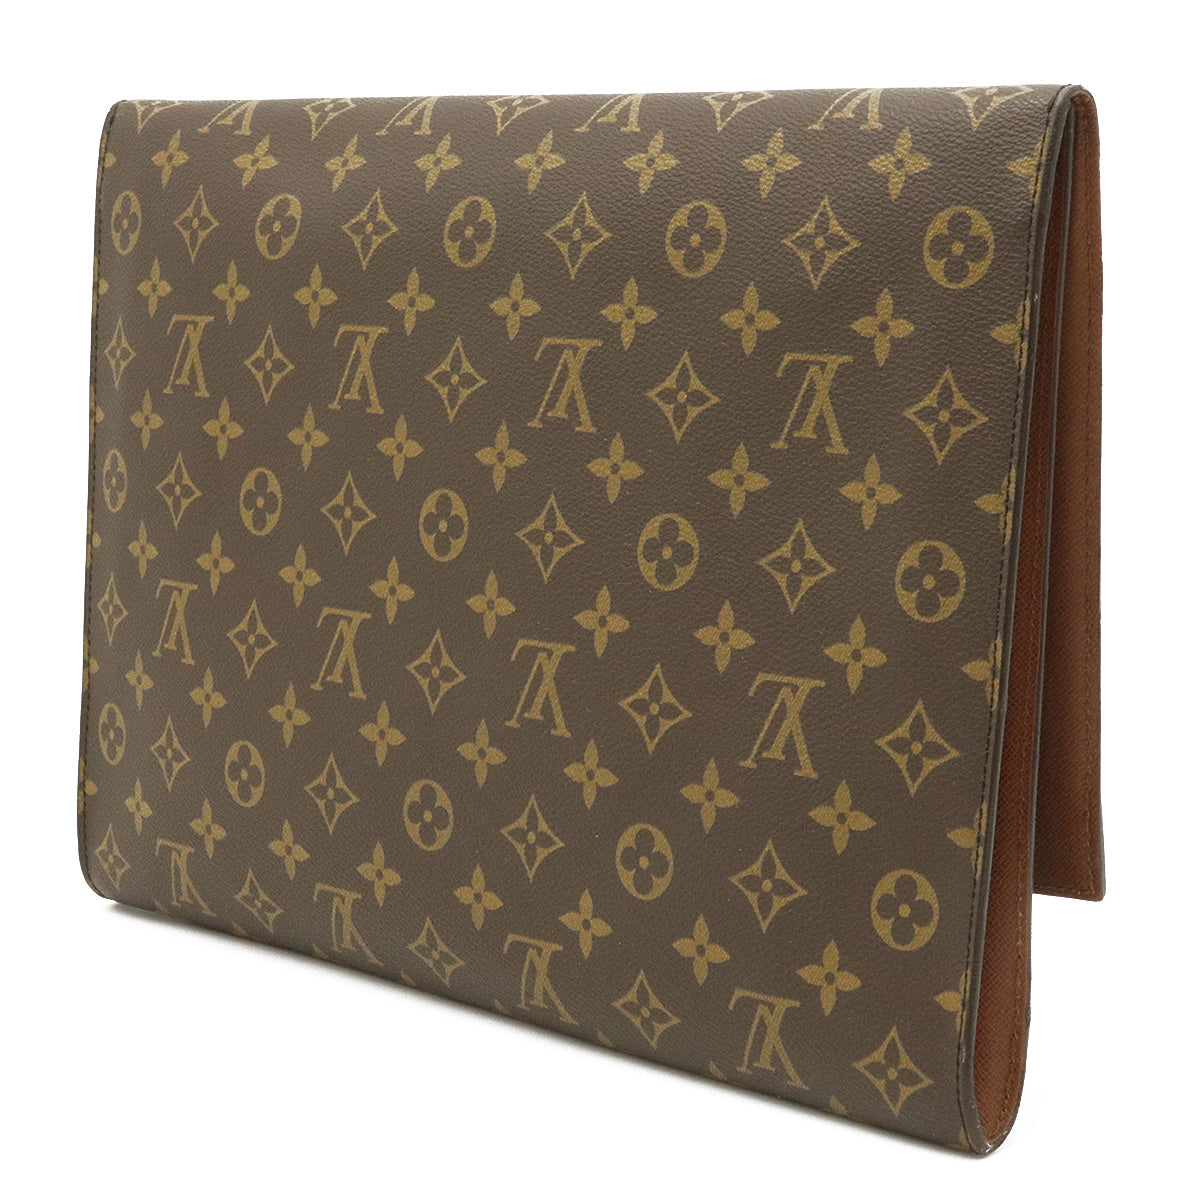 Louis Vuitton, Bags, Vintage Louis Vuitton Envelope Clutch